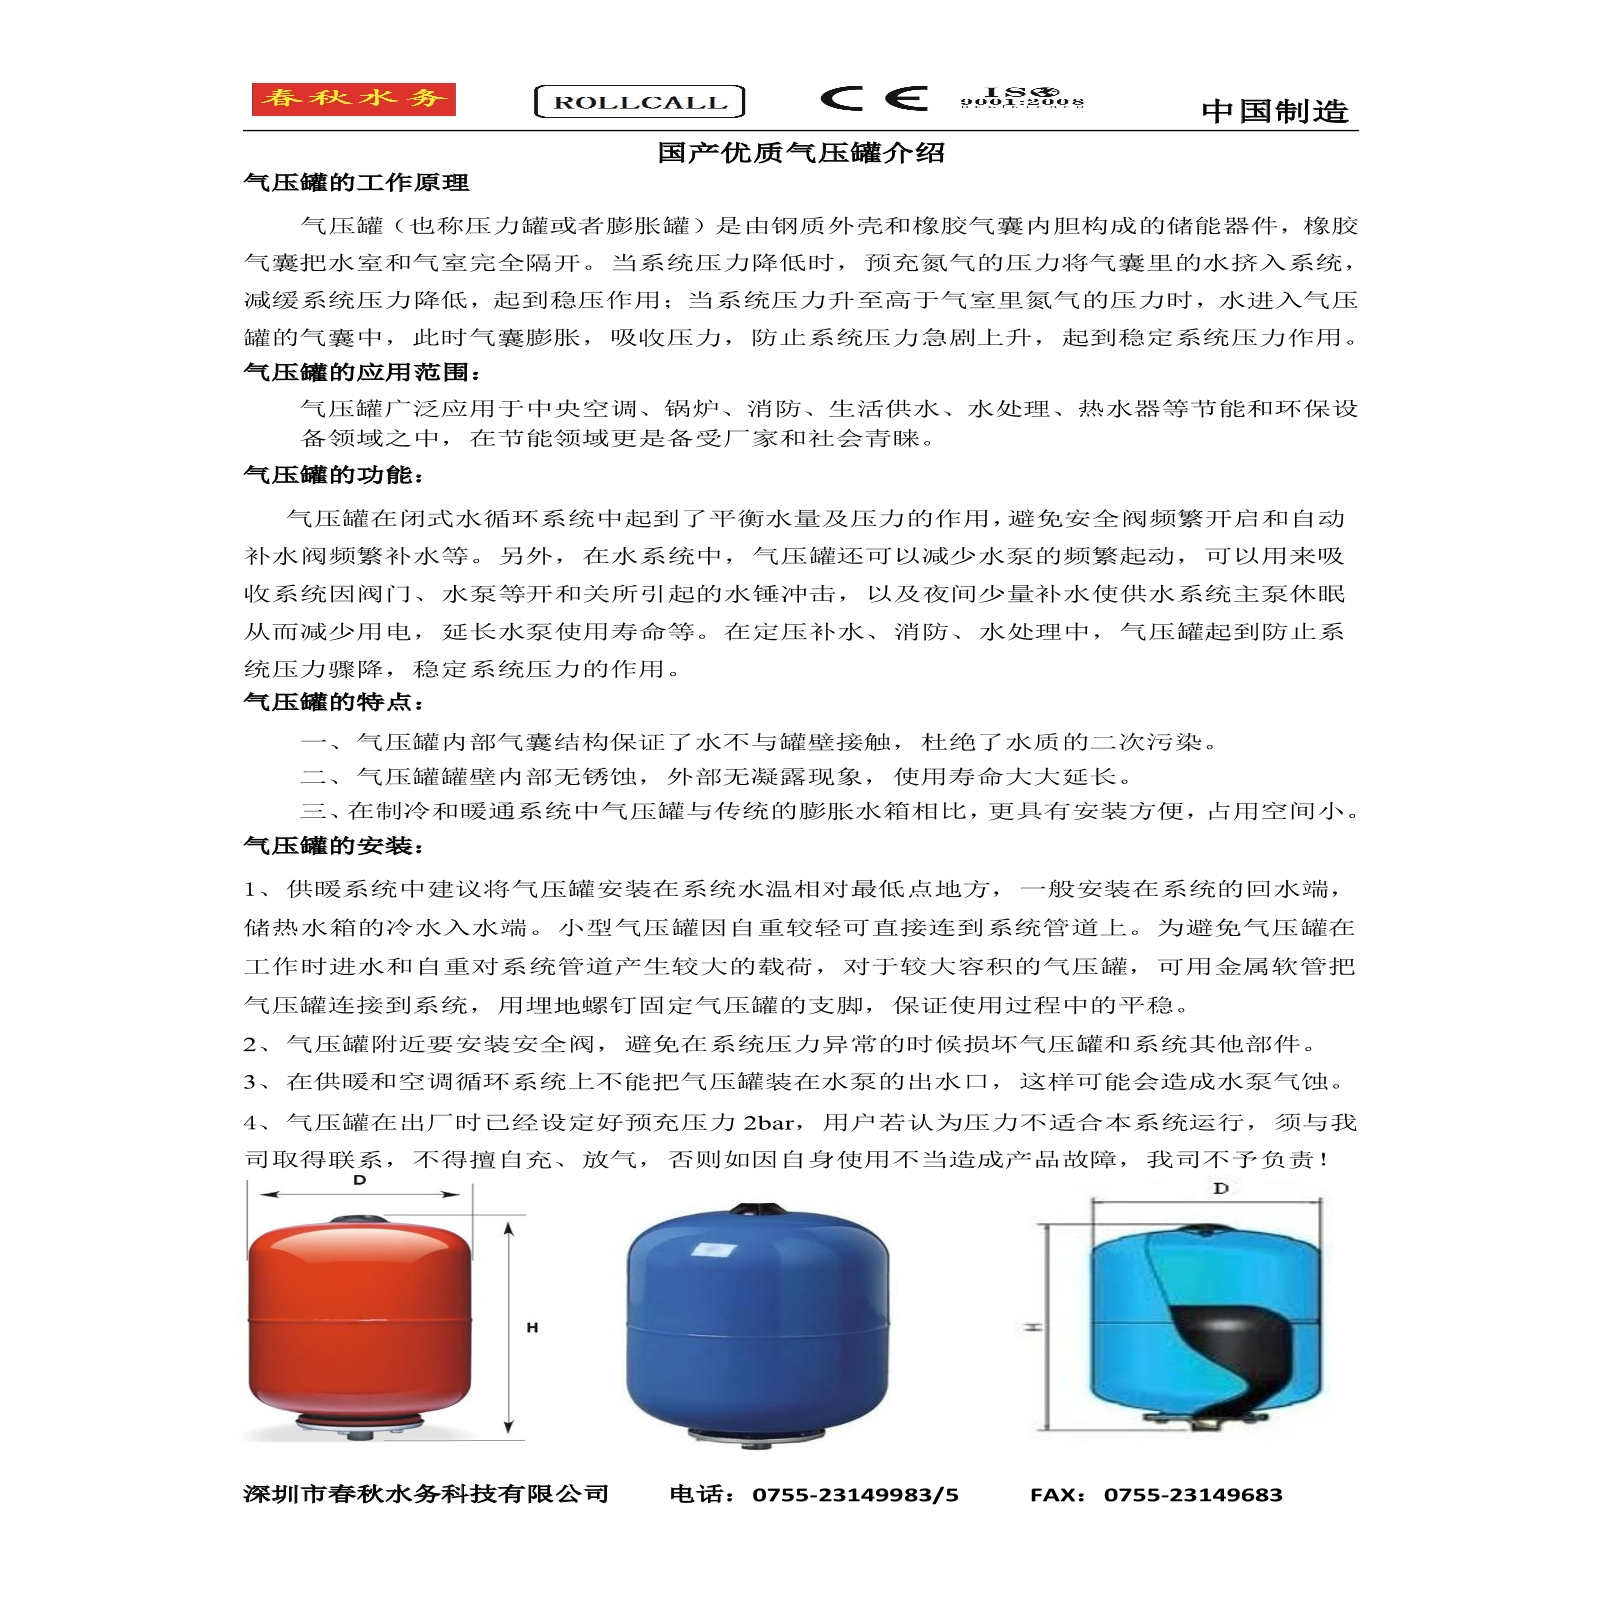 国产优质气压罐产品介绍